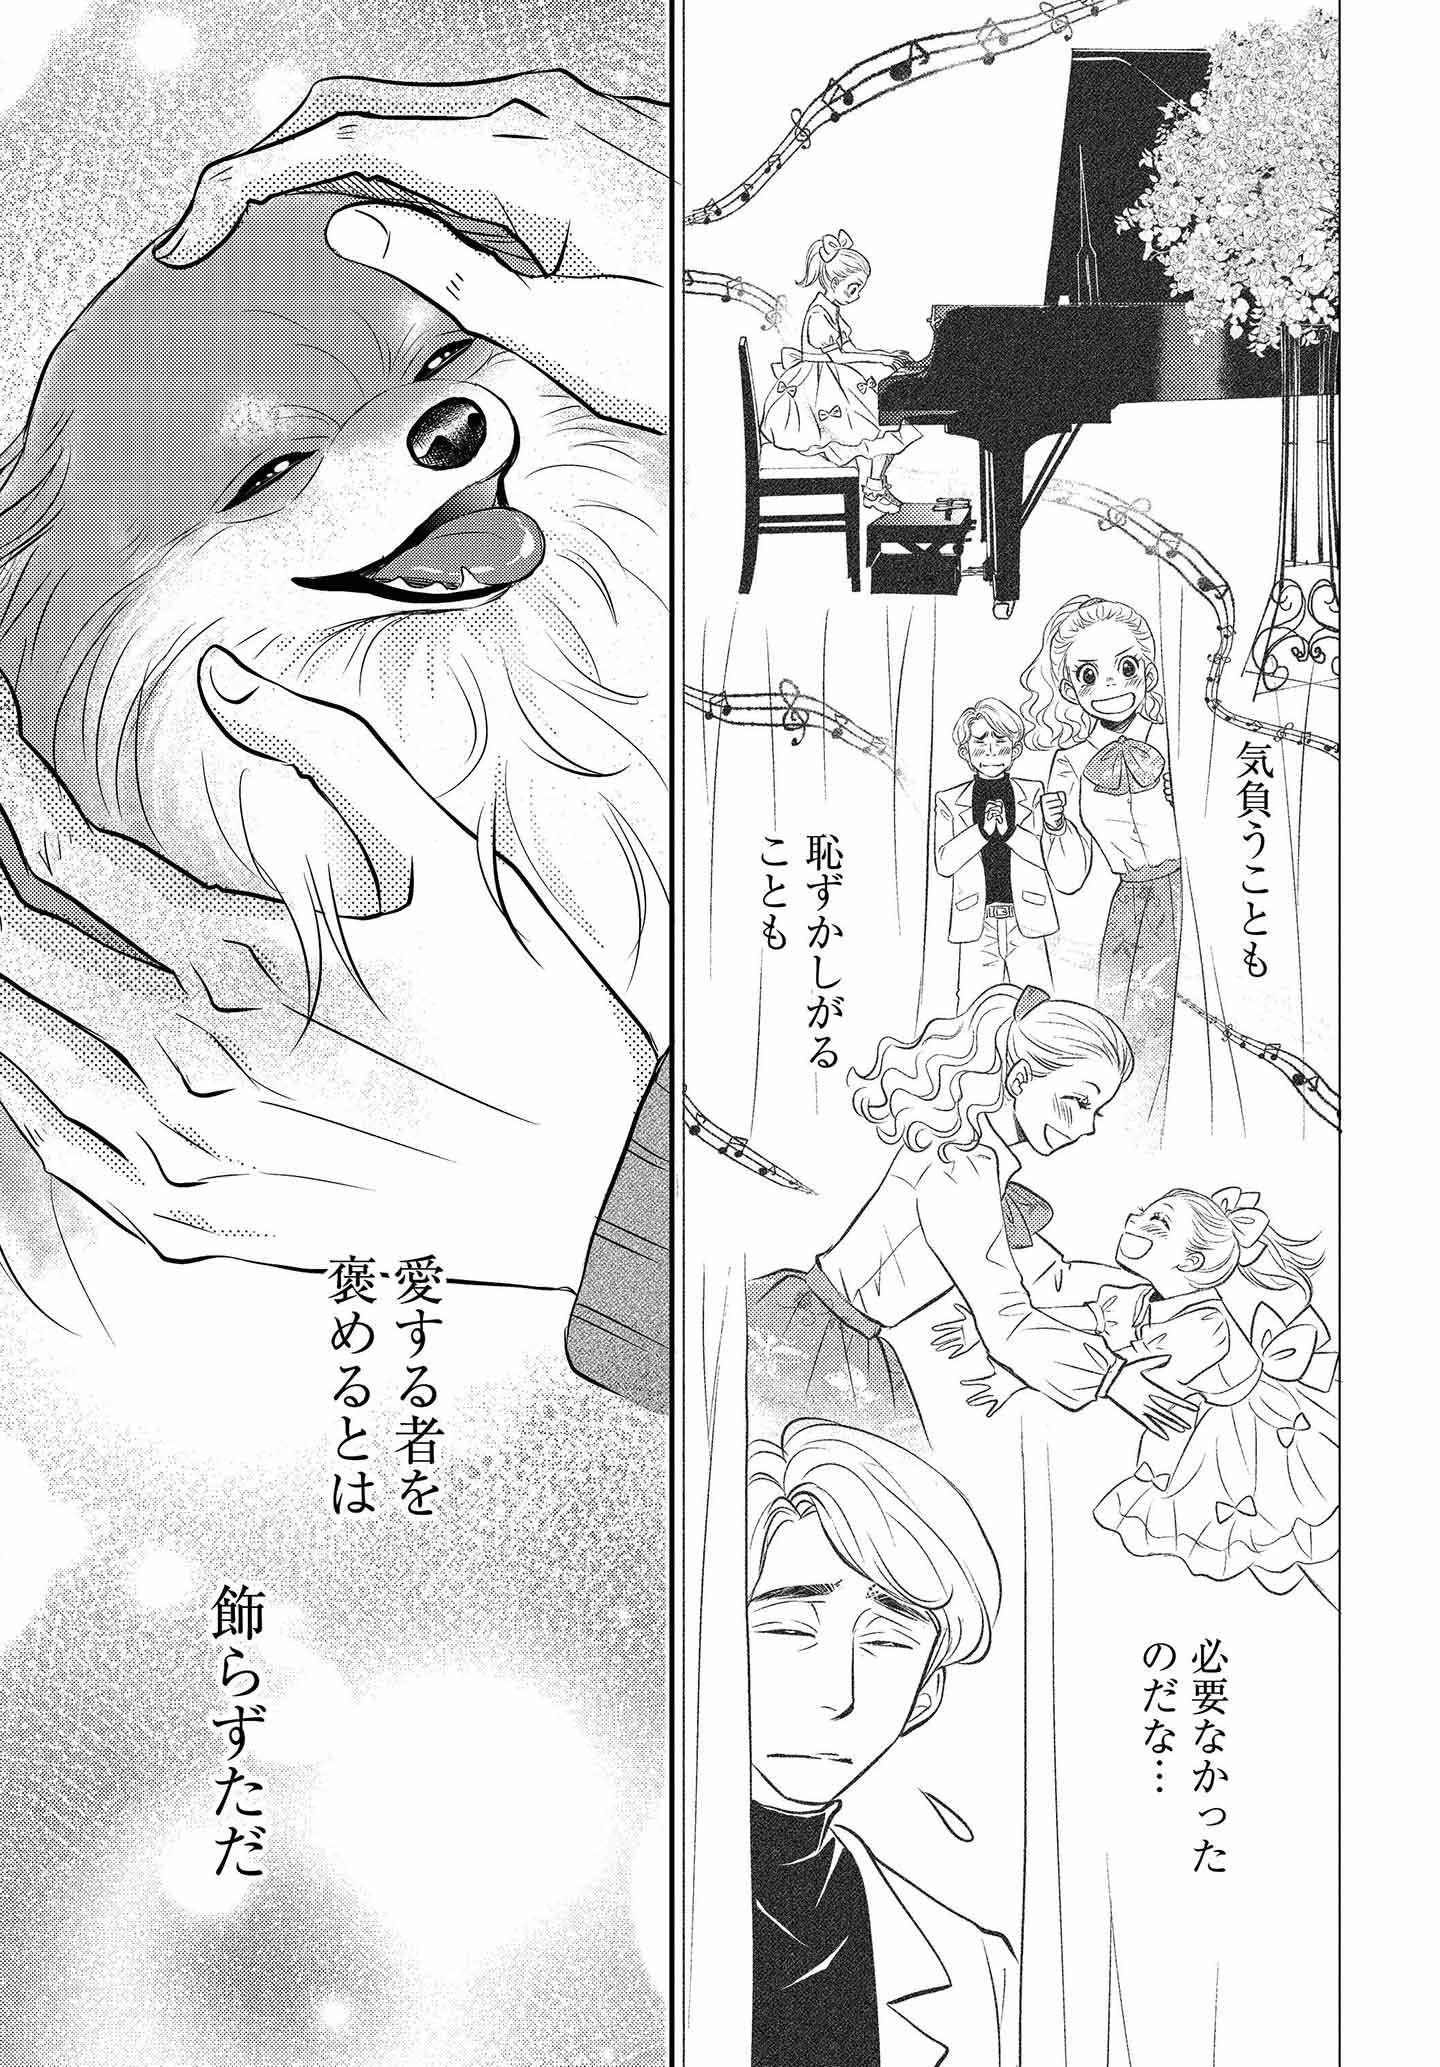 ドッグトレーニング漫画『DOG SIGNAL』33話目　3/4